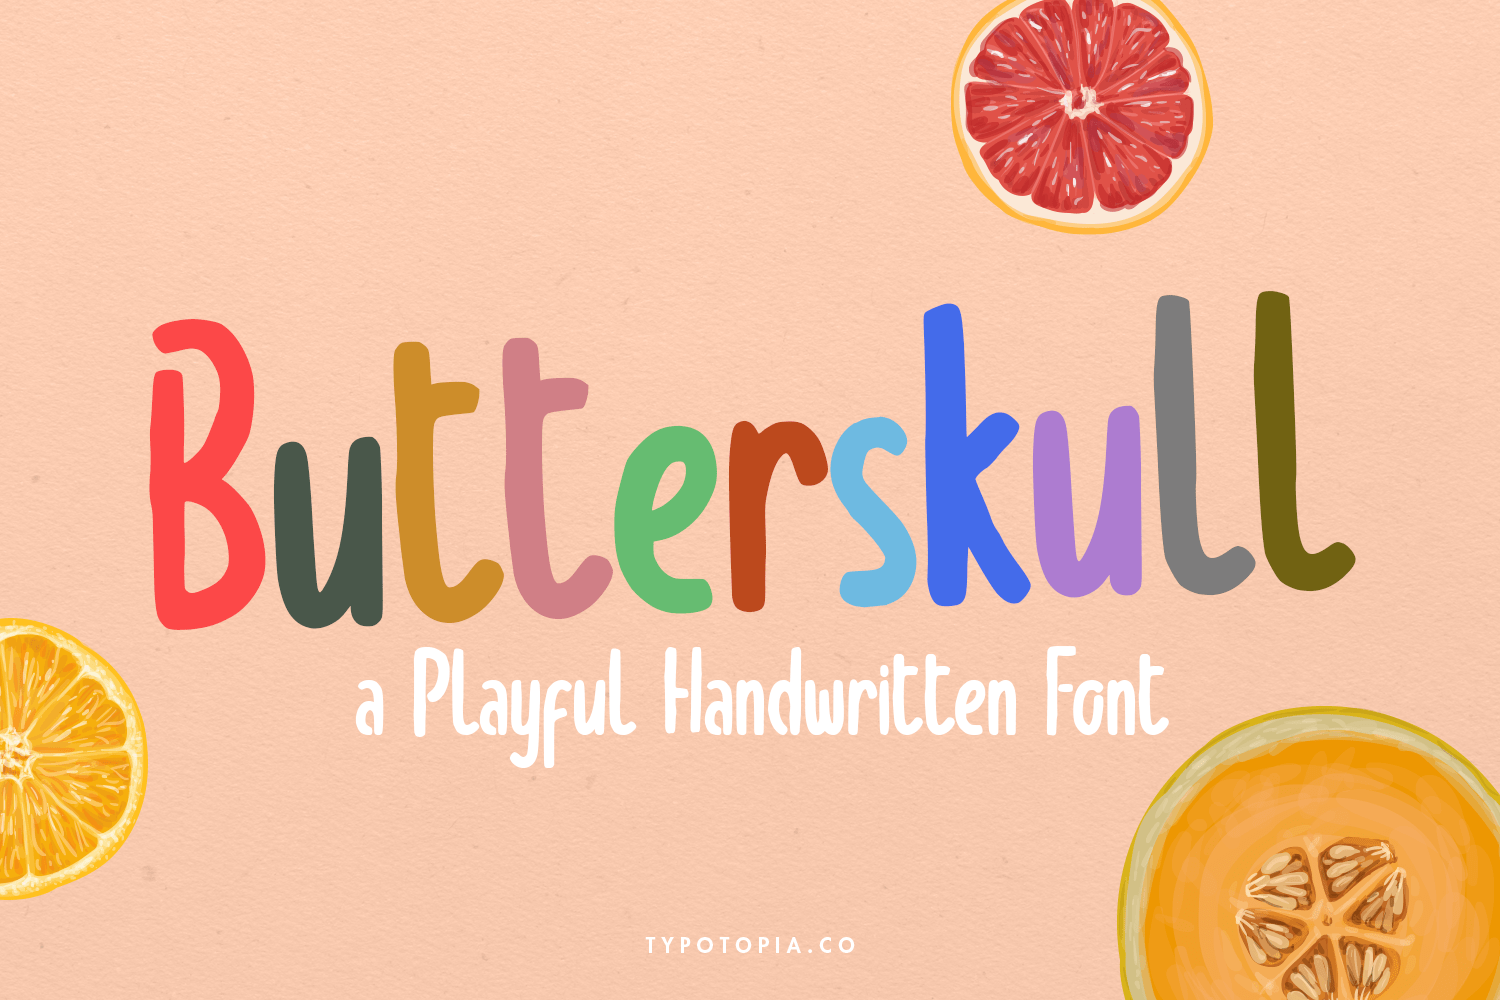 Butterskull a Playful Handwritten Font